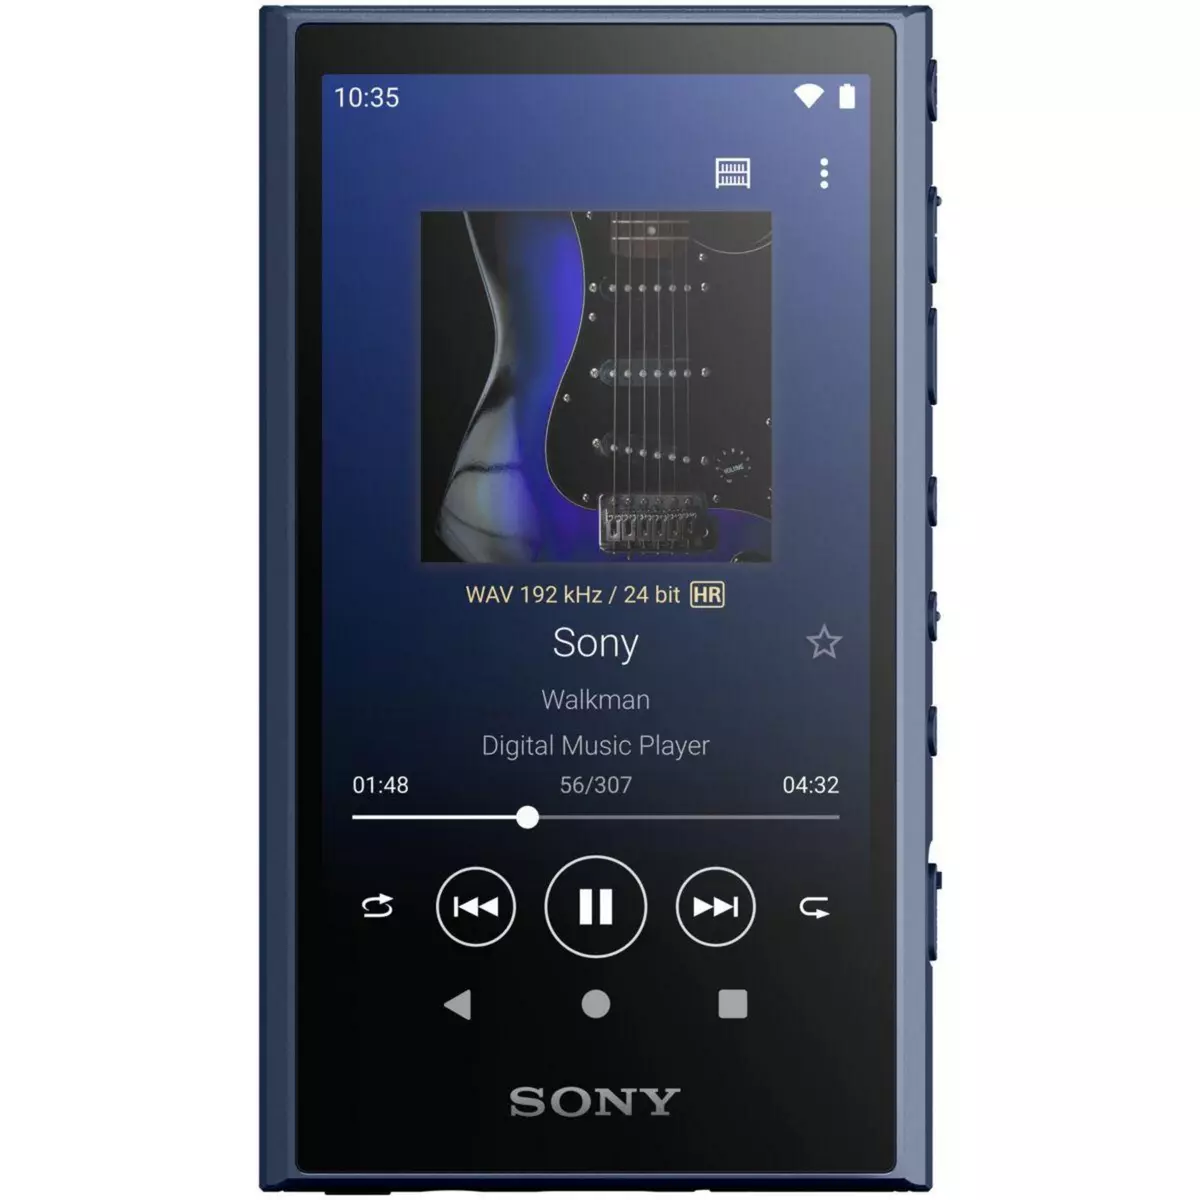 SONY Lecteur MP3 NW-A306 Noir - 32GB